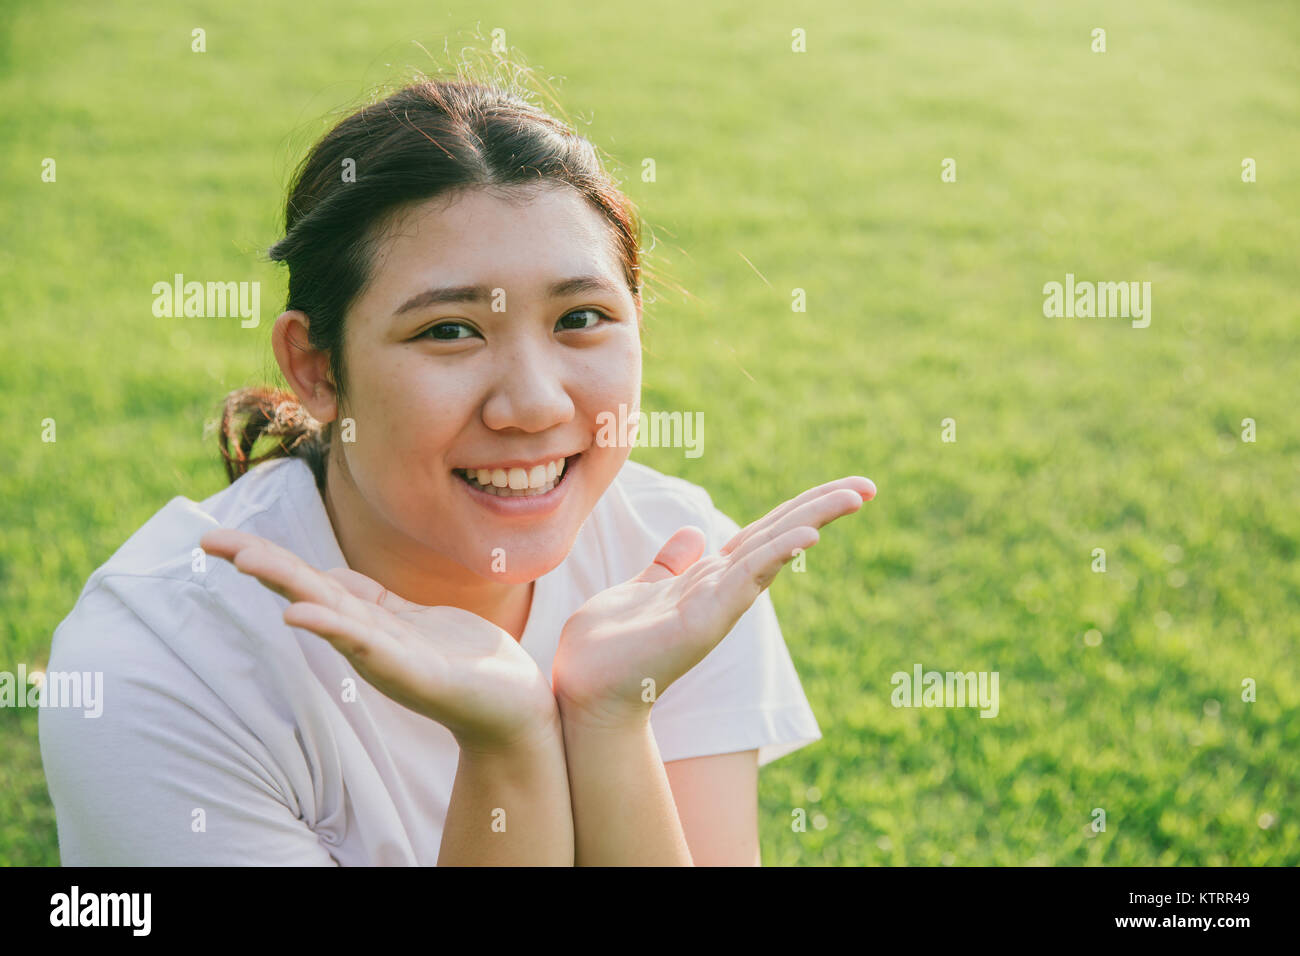 Jolies jeunes asiatiques sourire innocent de l'adolescence présente son visage sur fond d'herbe verte Banque D'Images